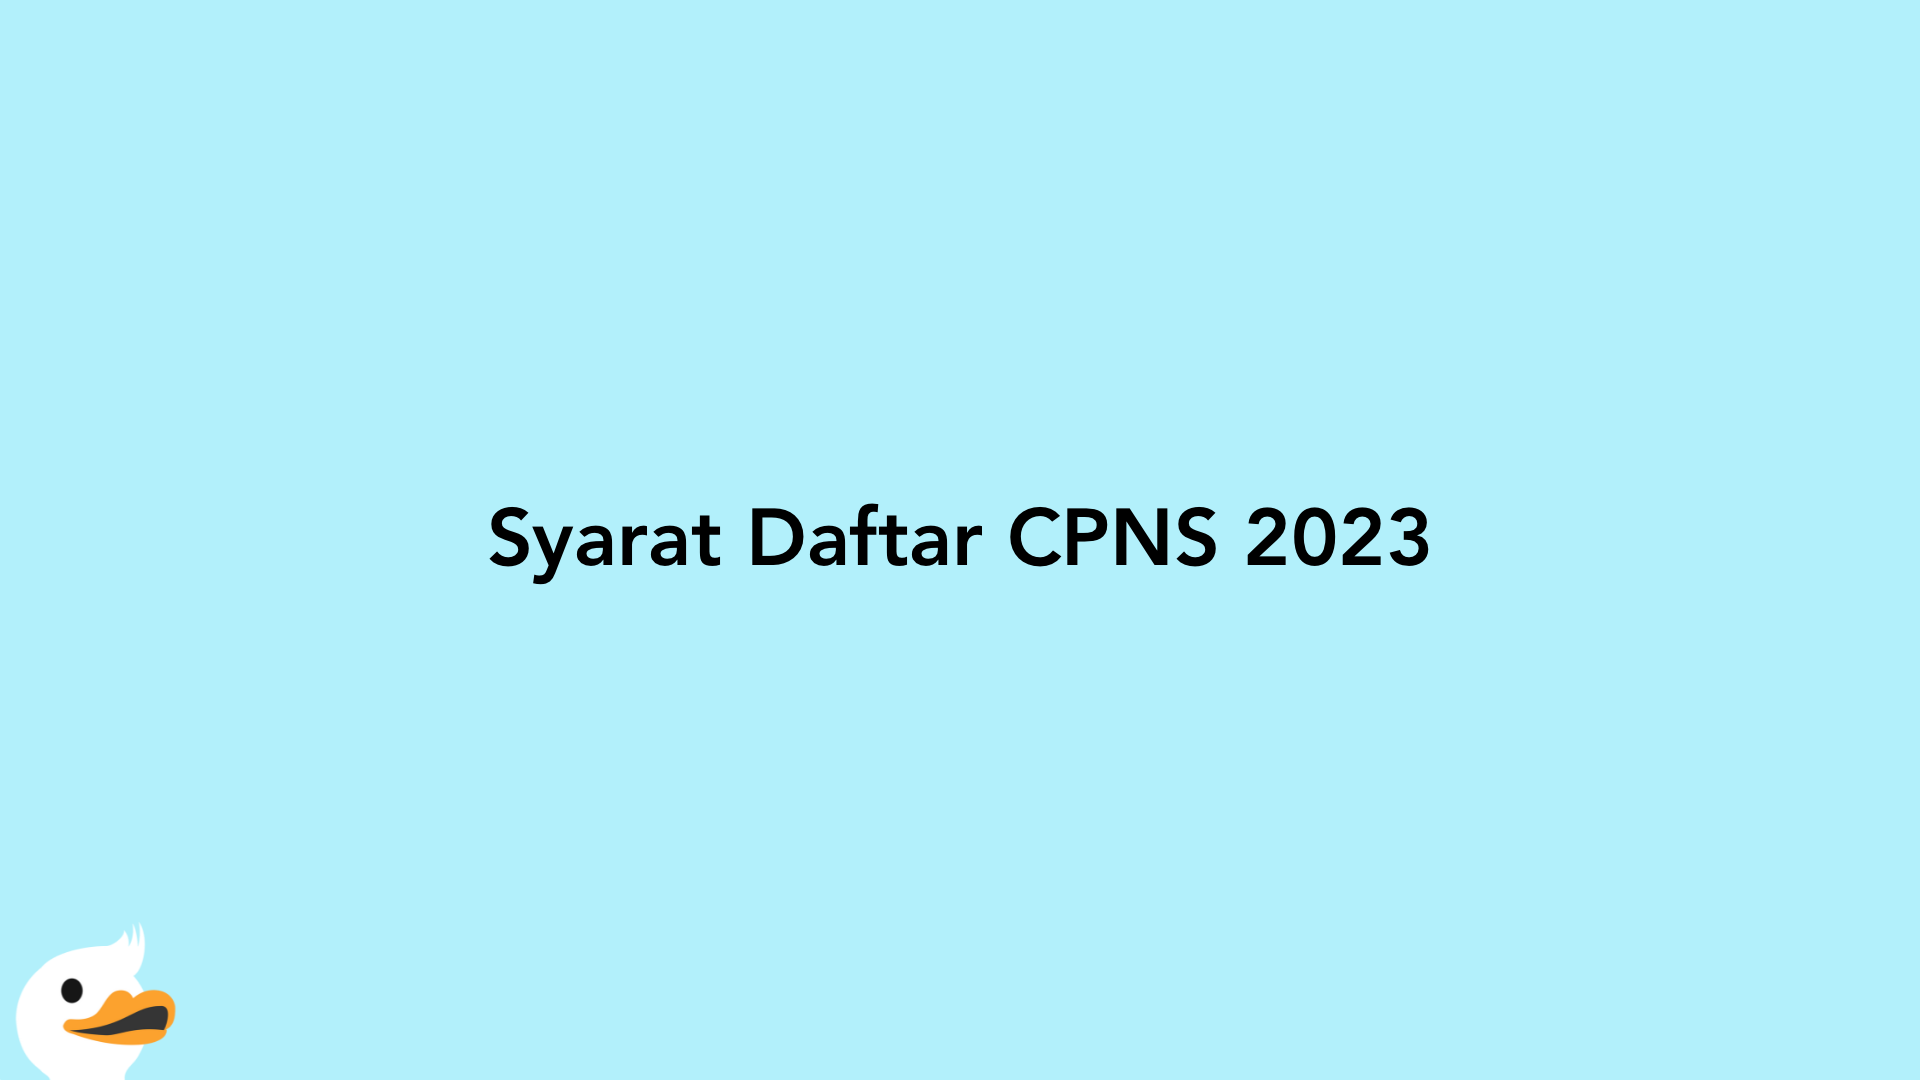 Syarat Daftar CPNS 2023